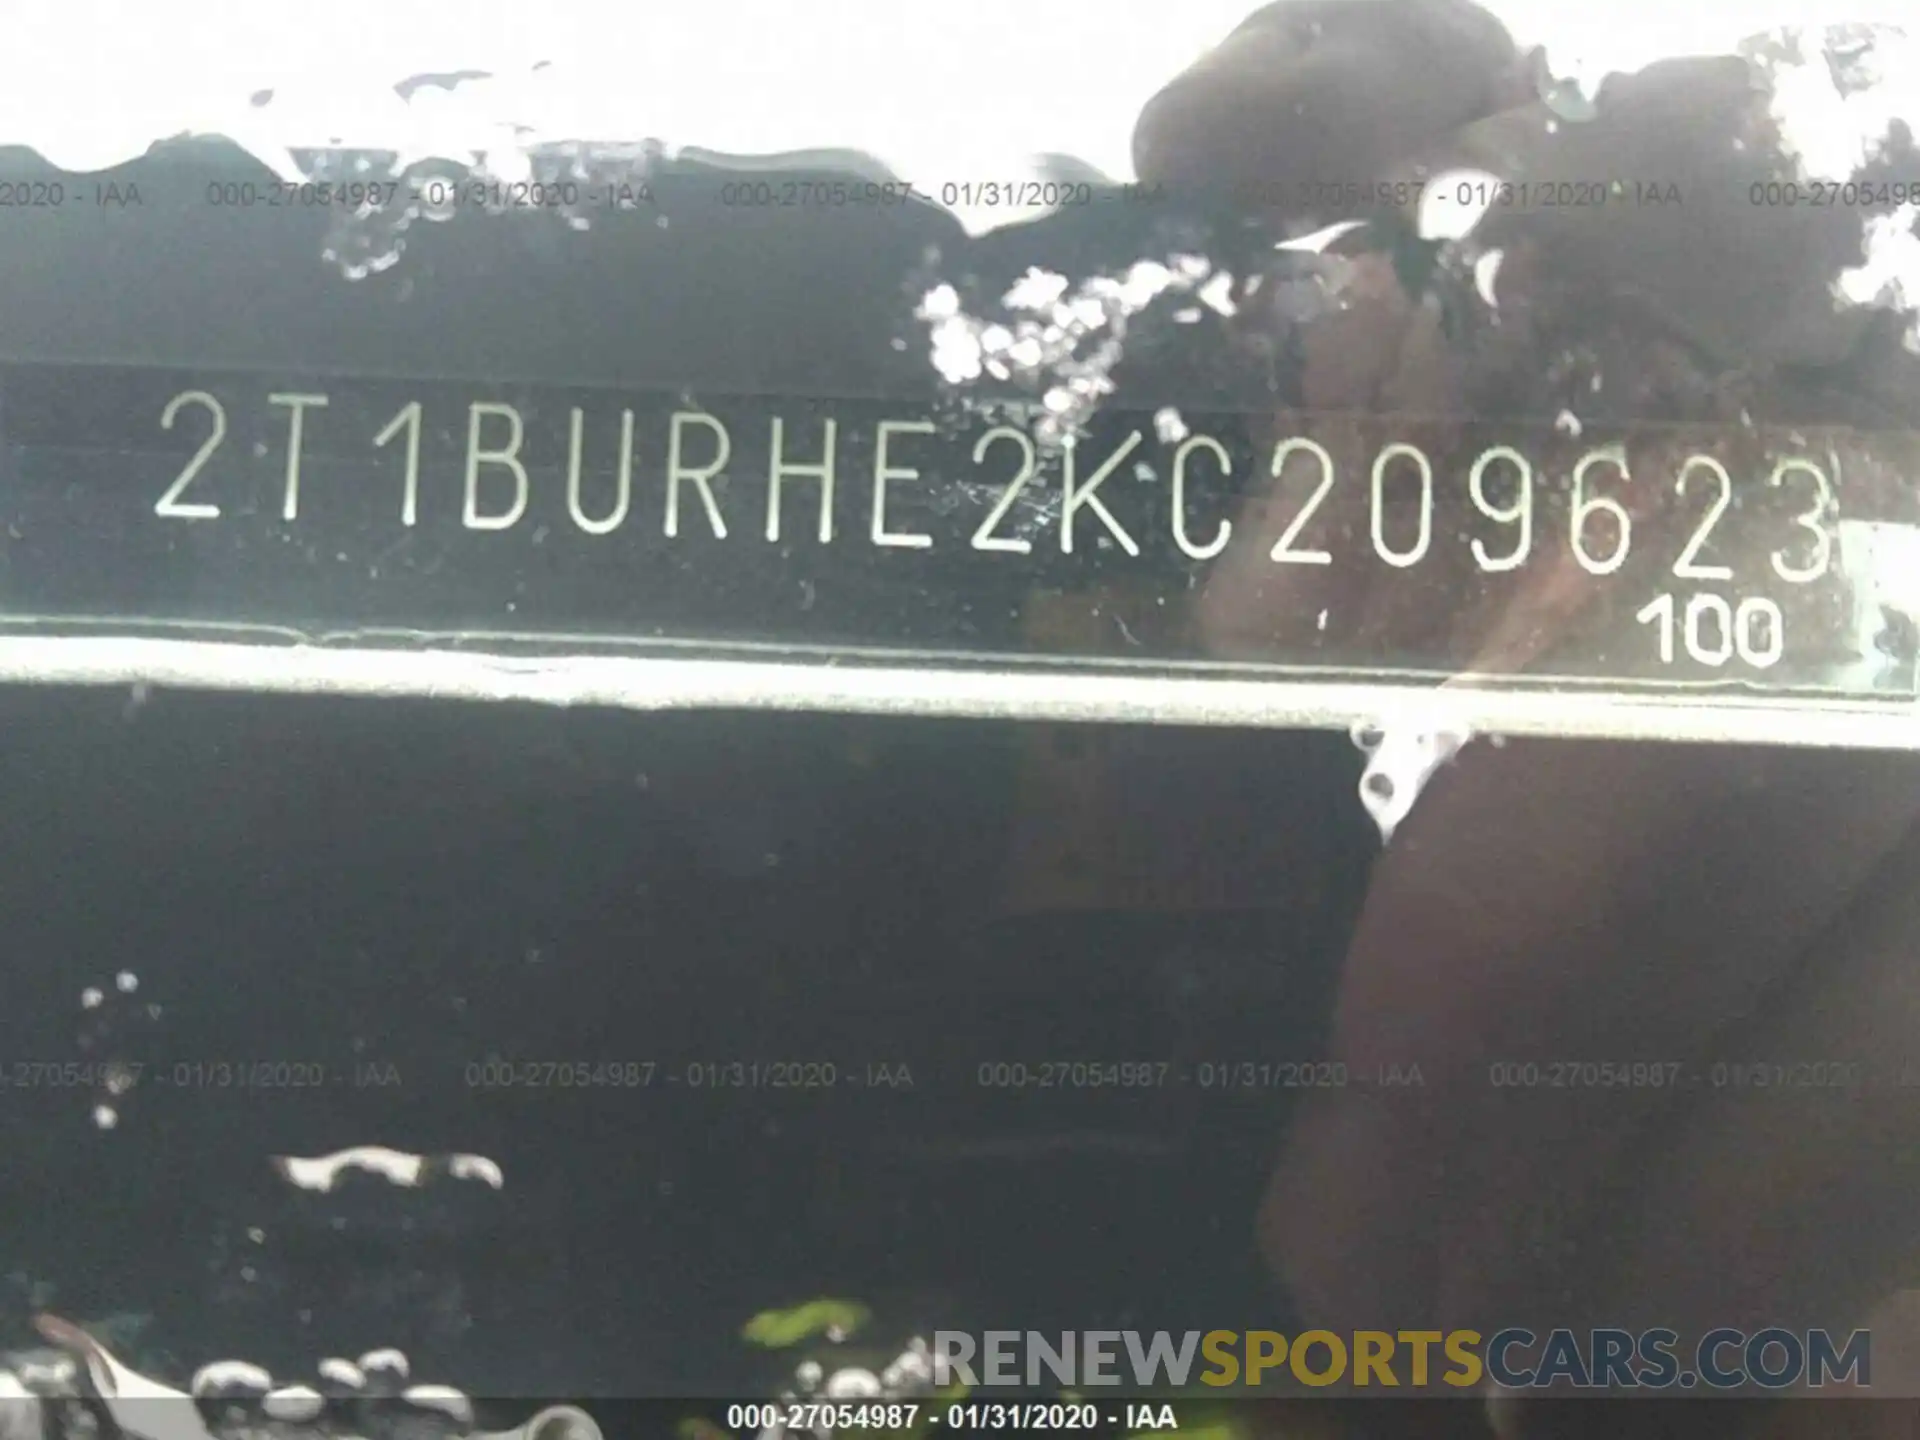 9 Photograph of a damaged car 2T1BURHE2KC209623 TOYOTA COROLLA 2019